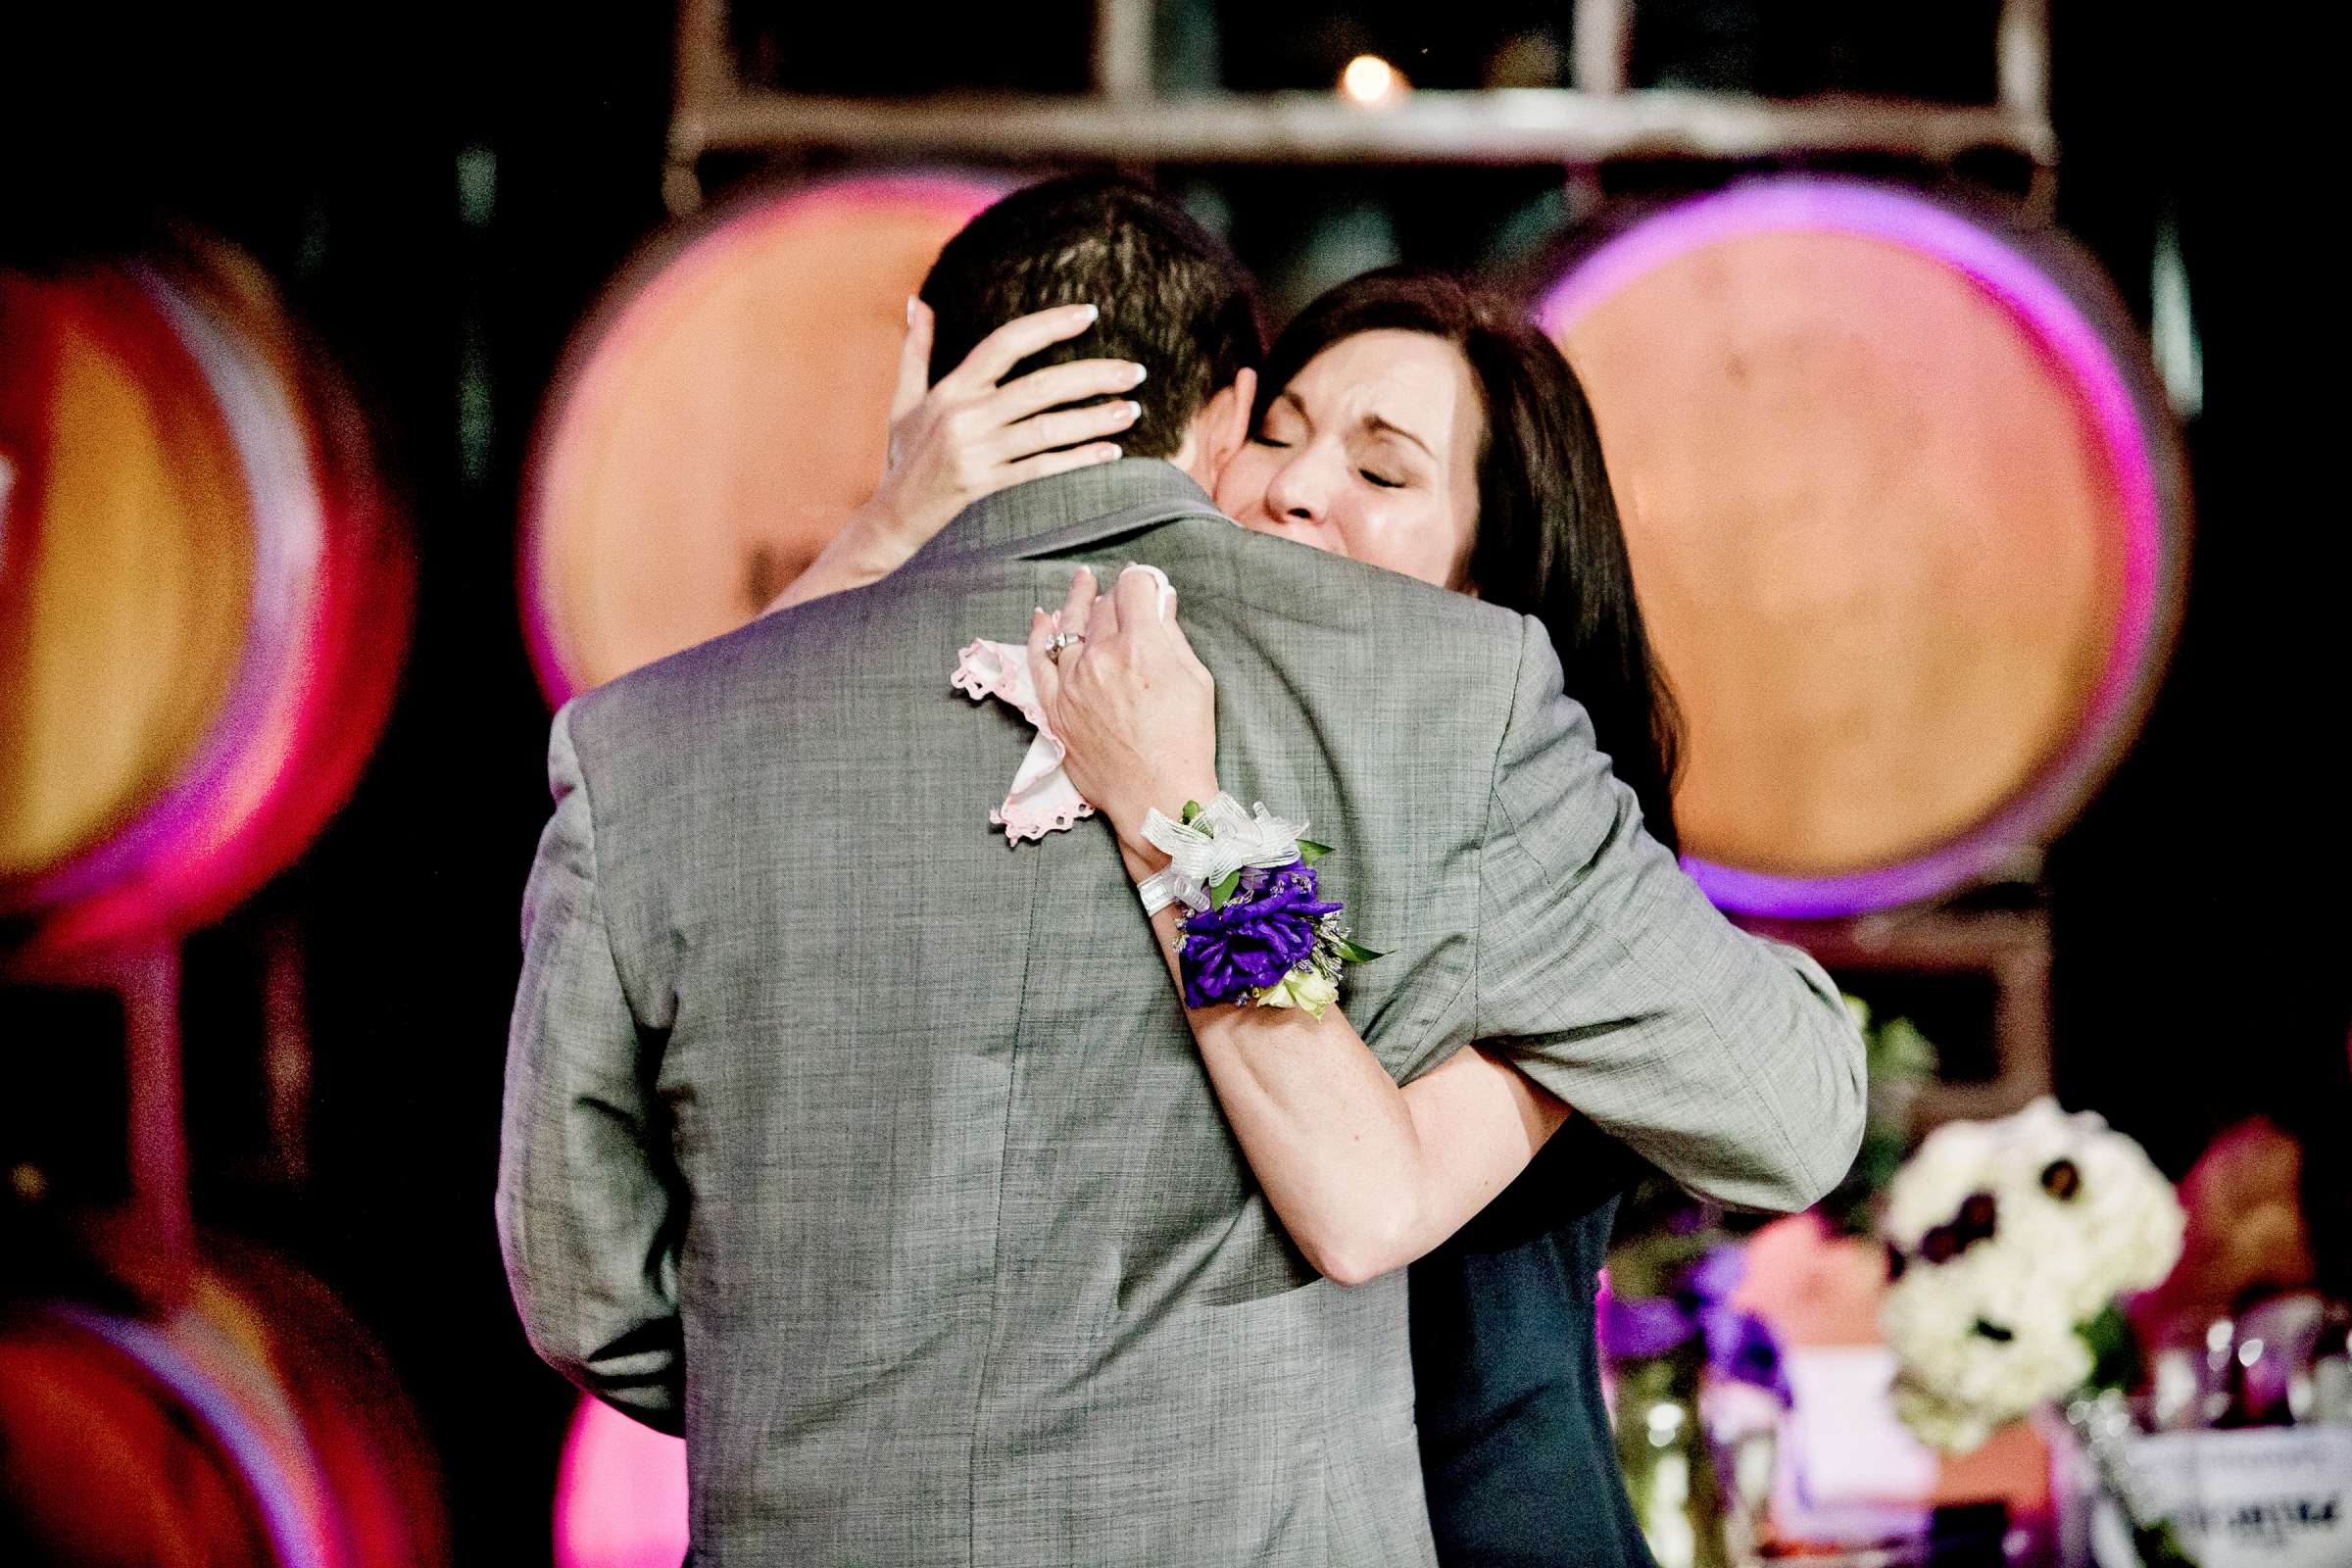 Mount Palomar Winery Wedding, Brandi and Jason Wedding Photo #321691 by True Photography